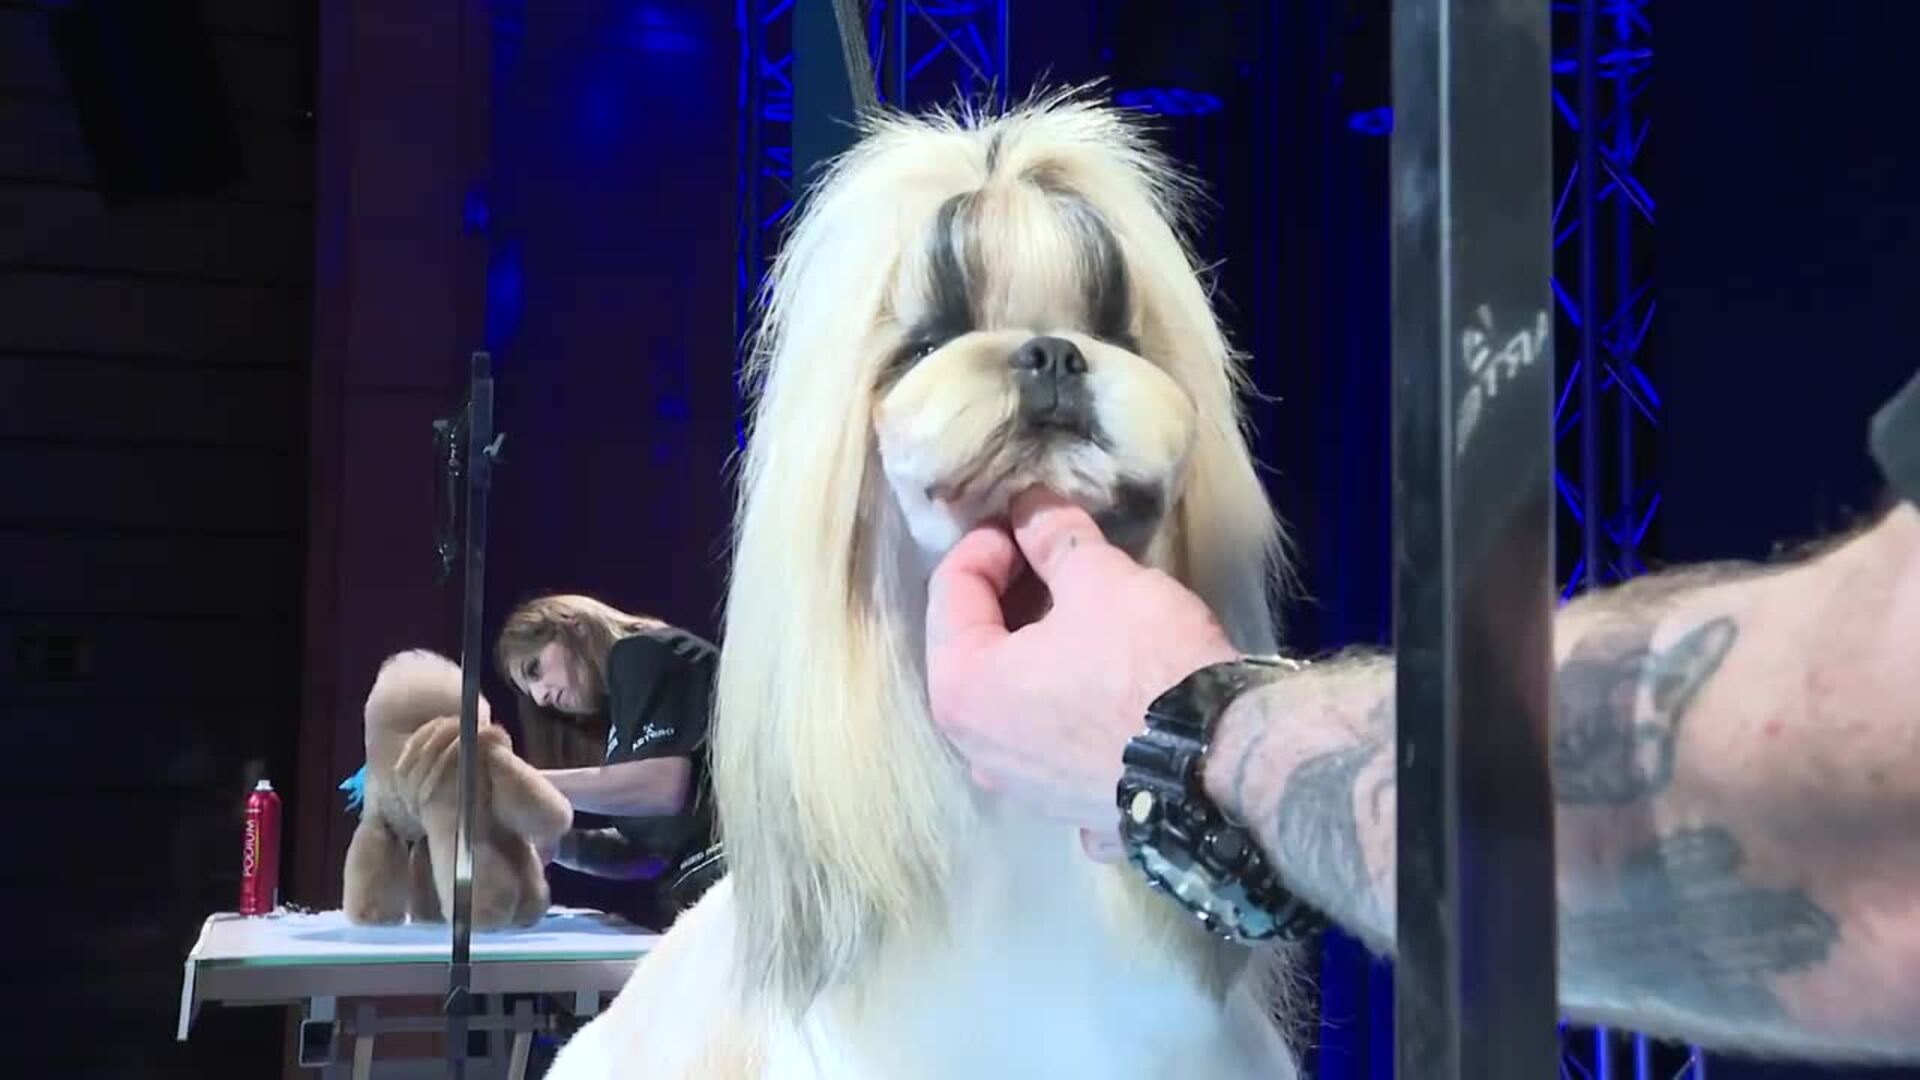 Las Jornadas Artero ofrecen un espectáculo de peluquería canina en Madrid